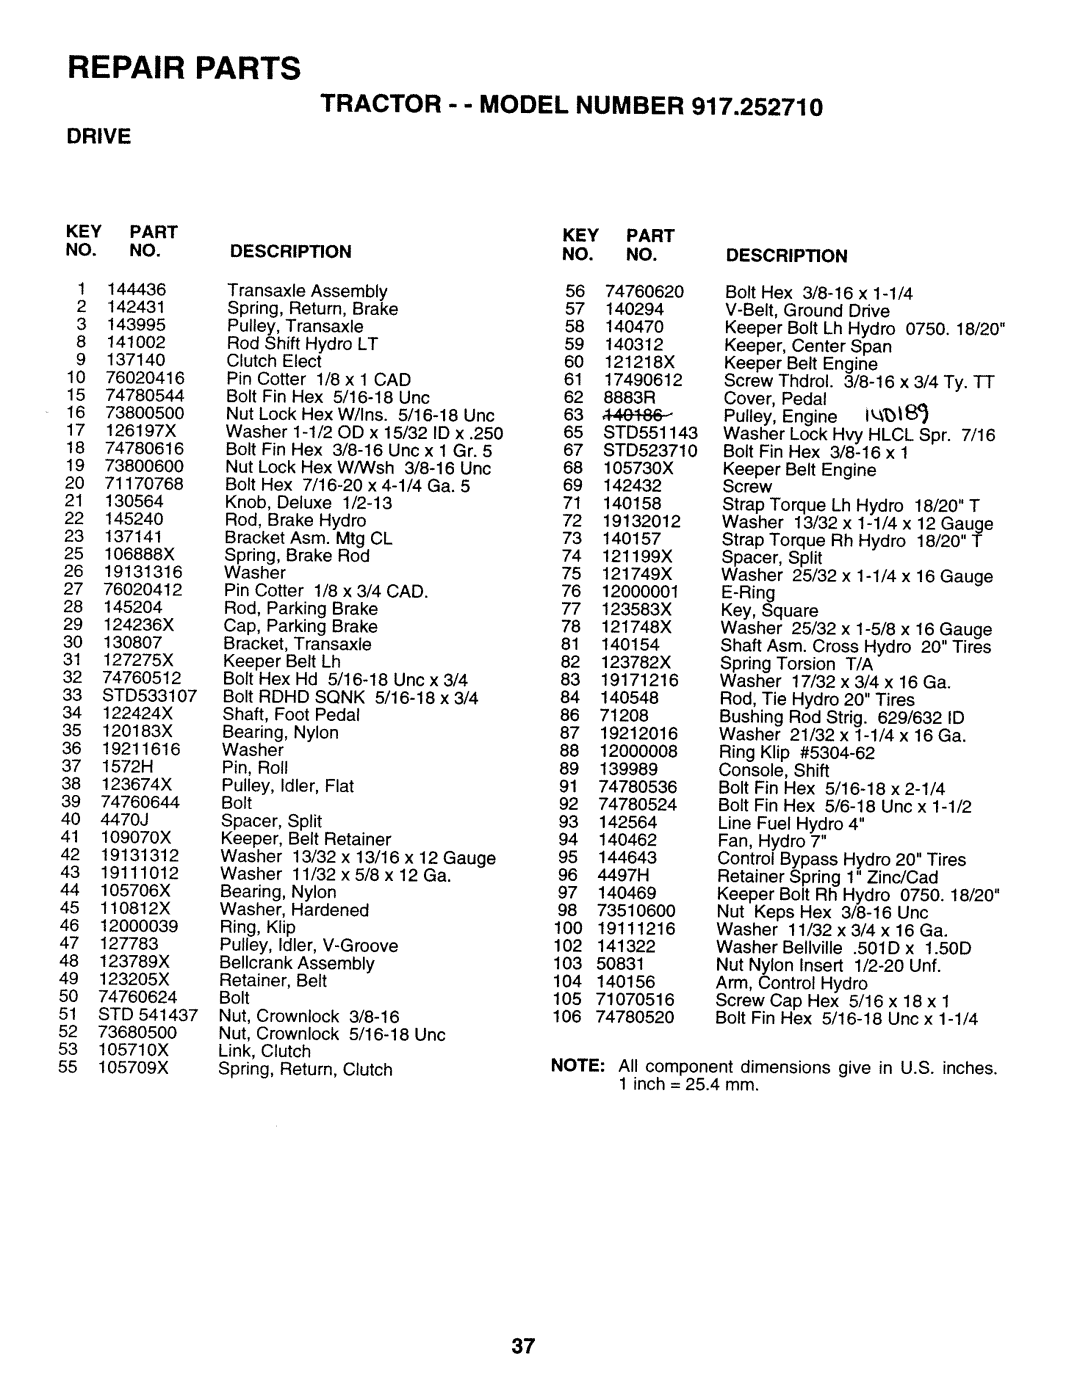 Sears 917.25271 owner manual Repair Parts, Key Part No. No, Tractor - - Model Number, Drive, Description 